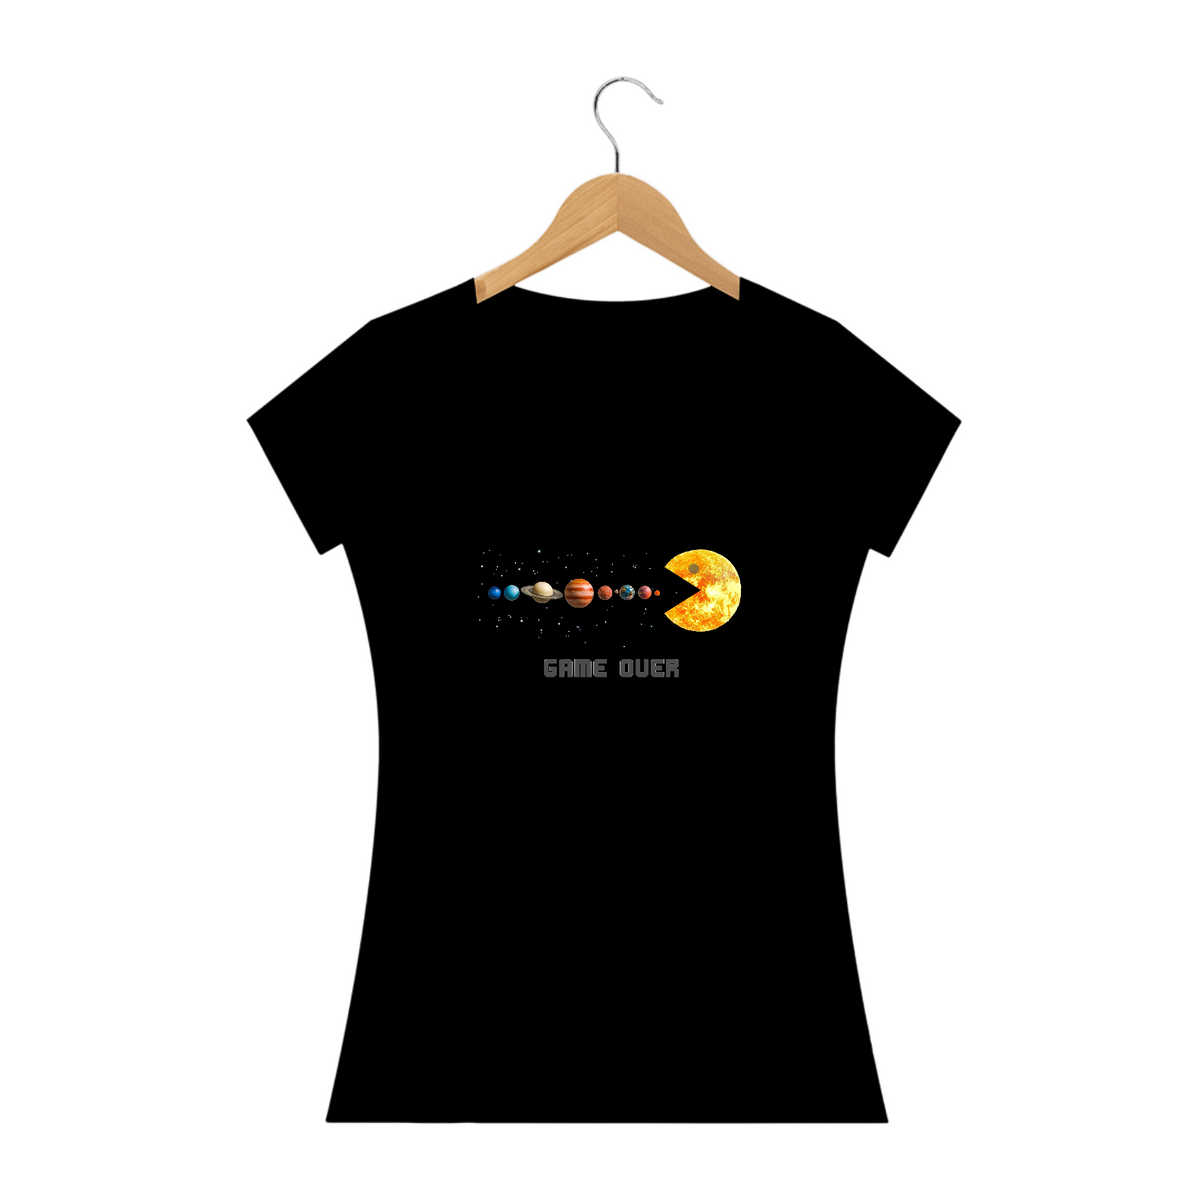 Nome do produto: Camiseta Baby Long Sistema Solar Game Over